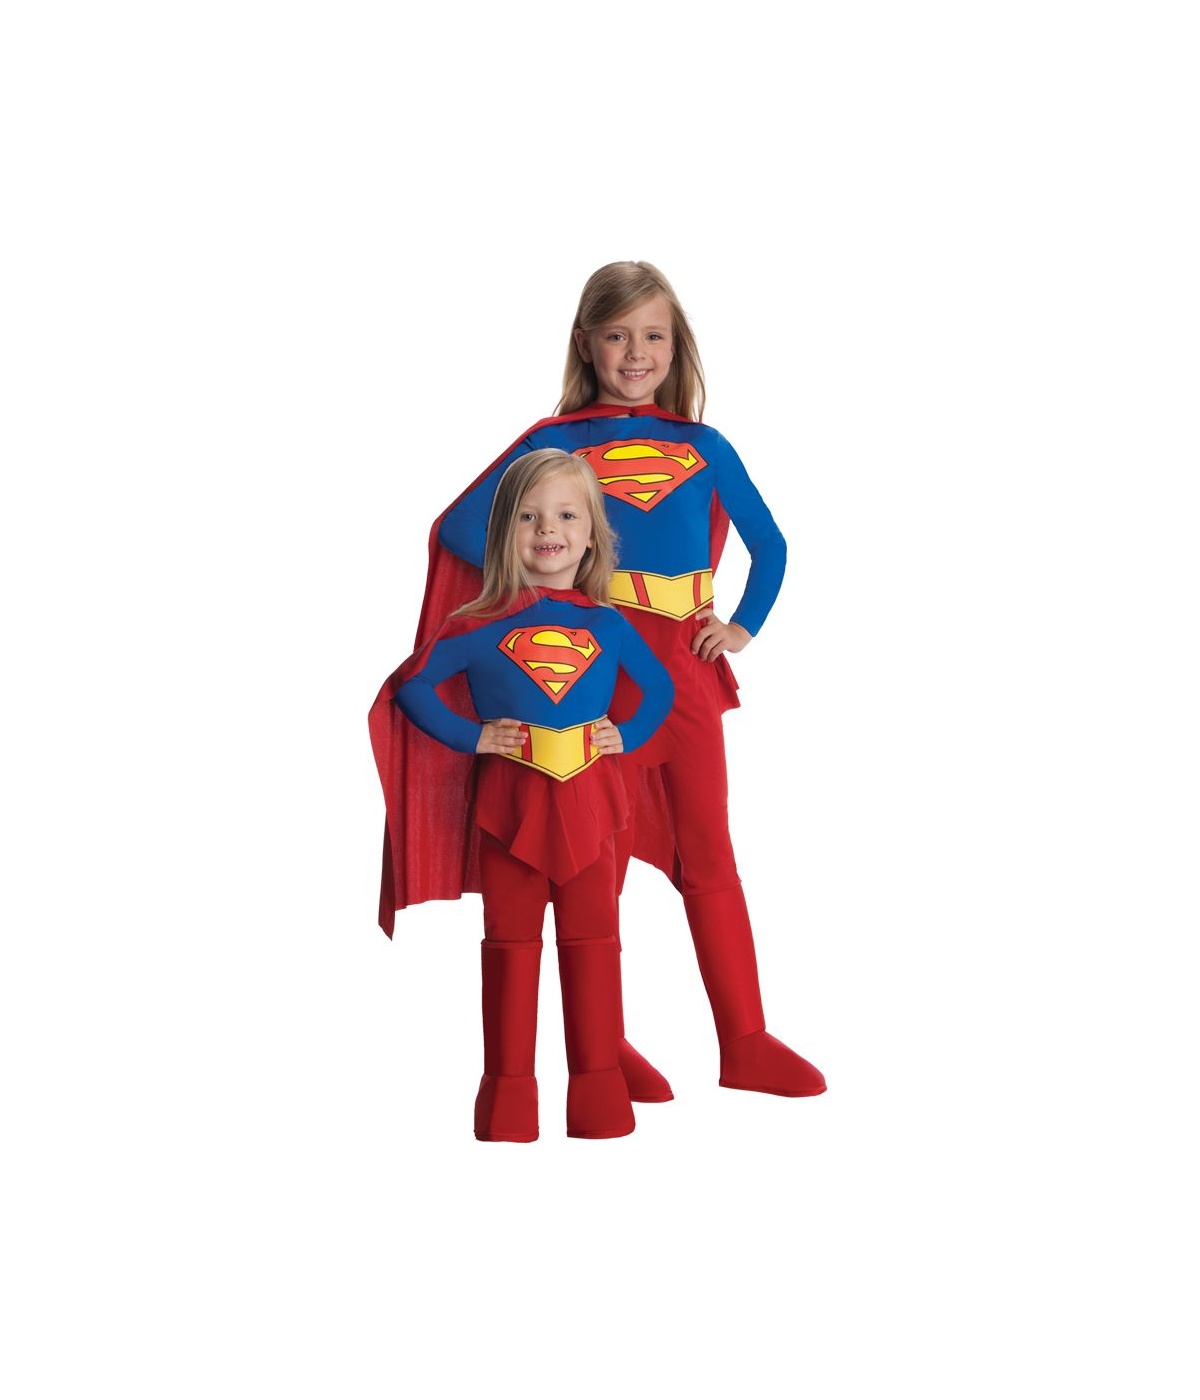  Girls Super Power Baby Costume